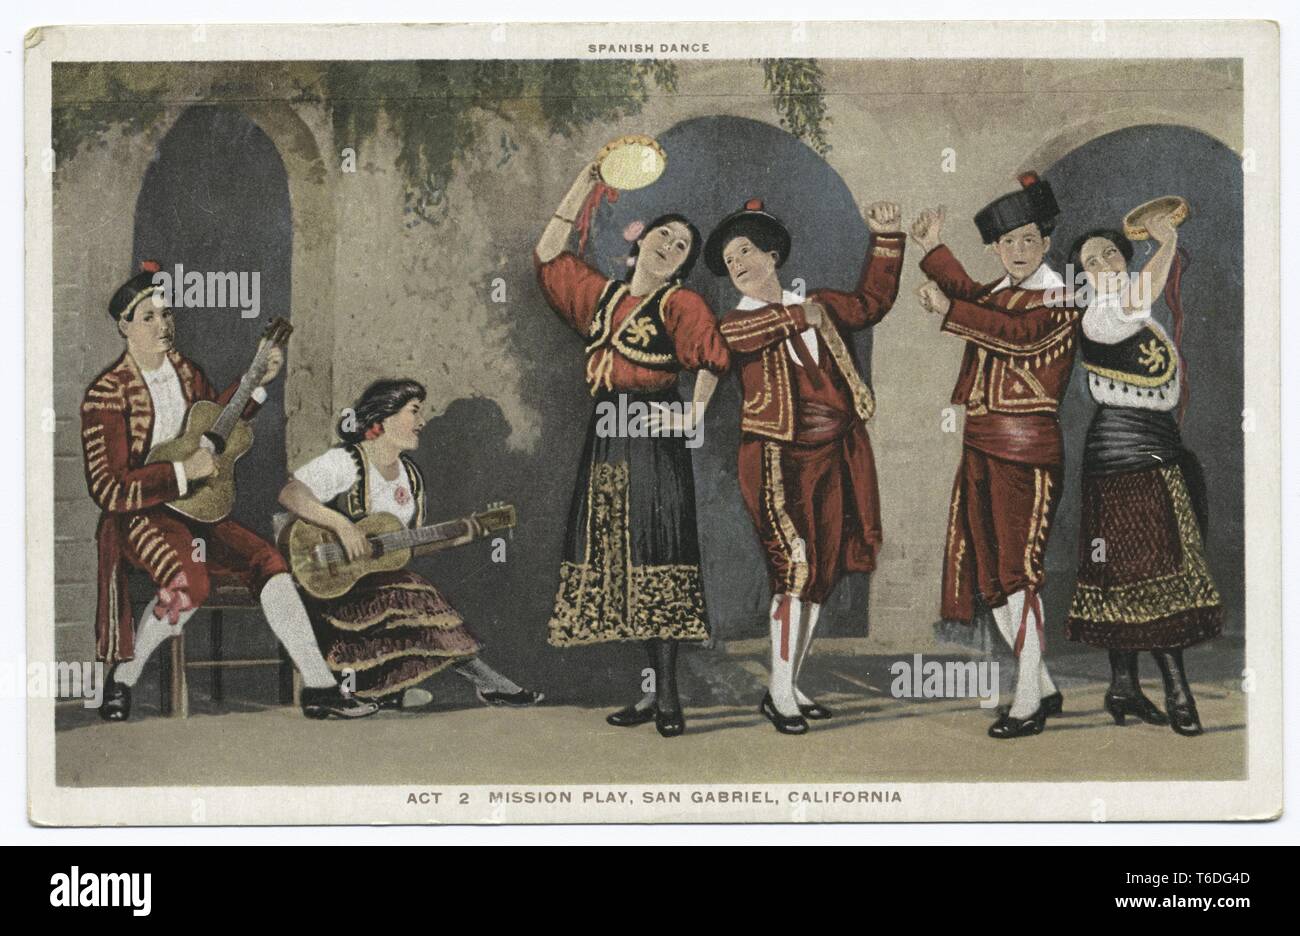 Postkarte mit der Darstellung der "spanischen Tanz"-Szene von Act 2 von einer Mission spielen in San Gabriel, Kalifornien, 1914. Von der New York Public Library. () Stockfoto